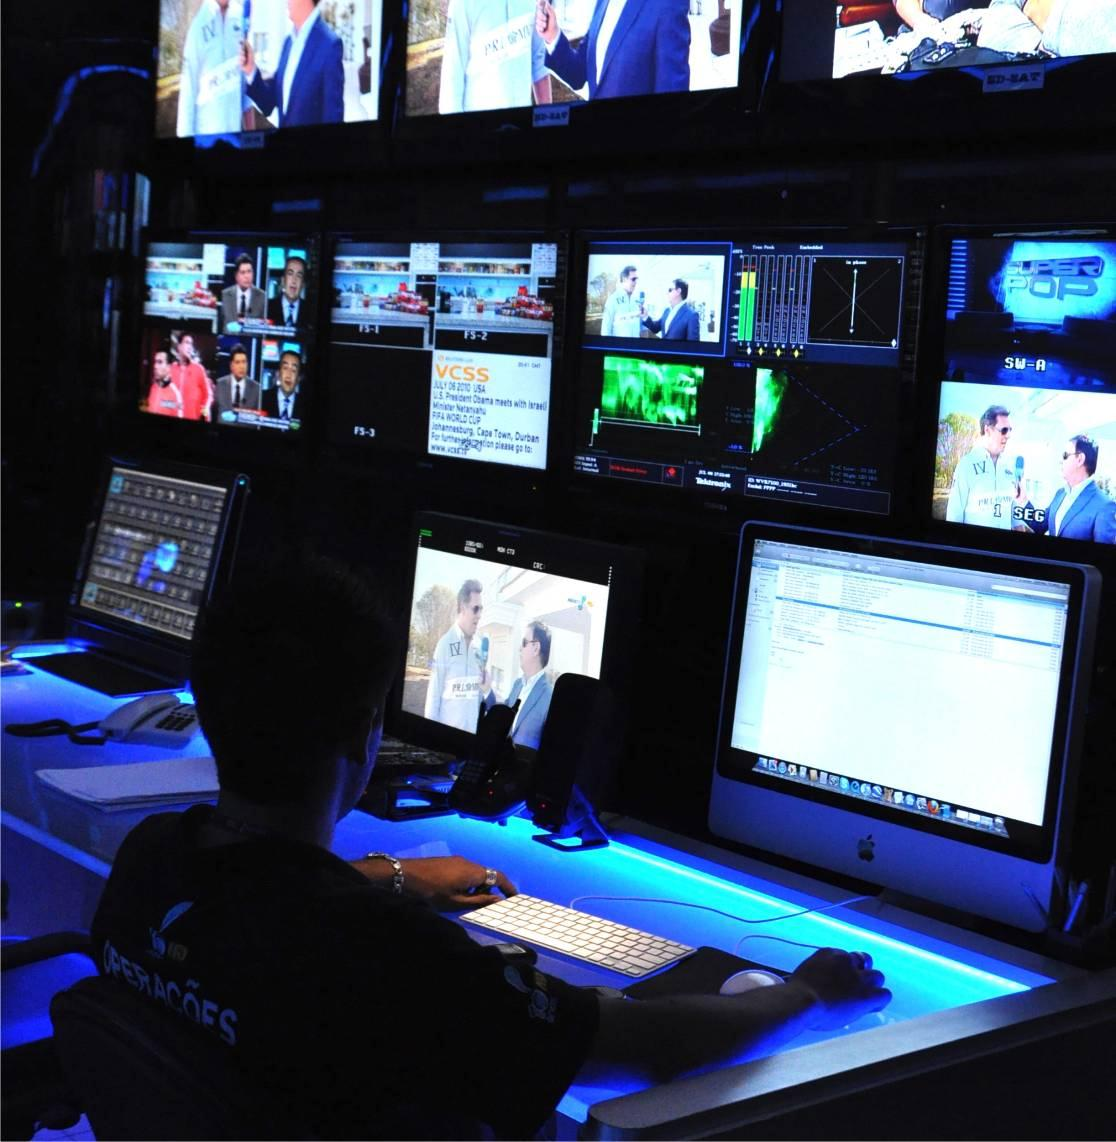 A MAIS AVANÇADA TECNOLOGIA A nossa qualidade técnica da programação se traduz no diferencial em relação às outras emissoras de TV no país.